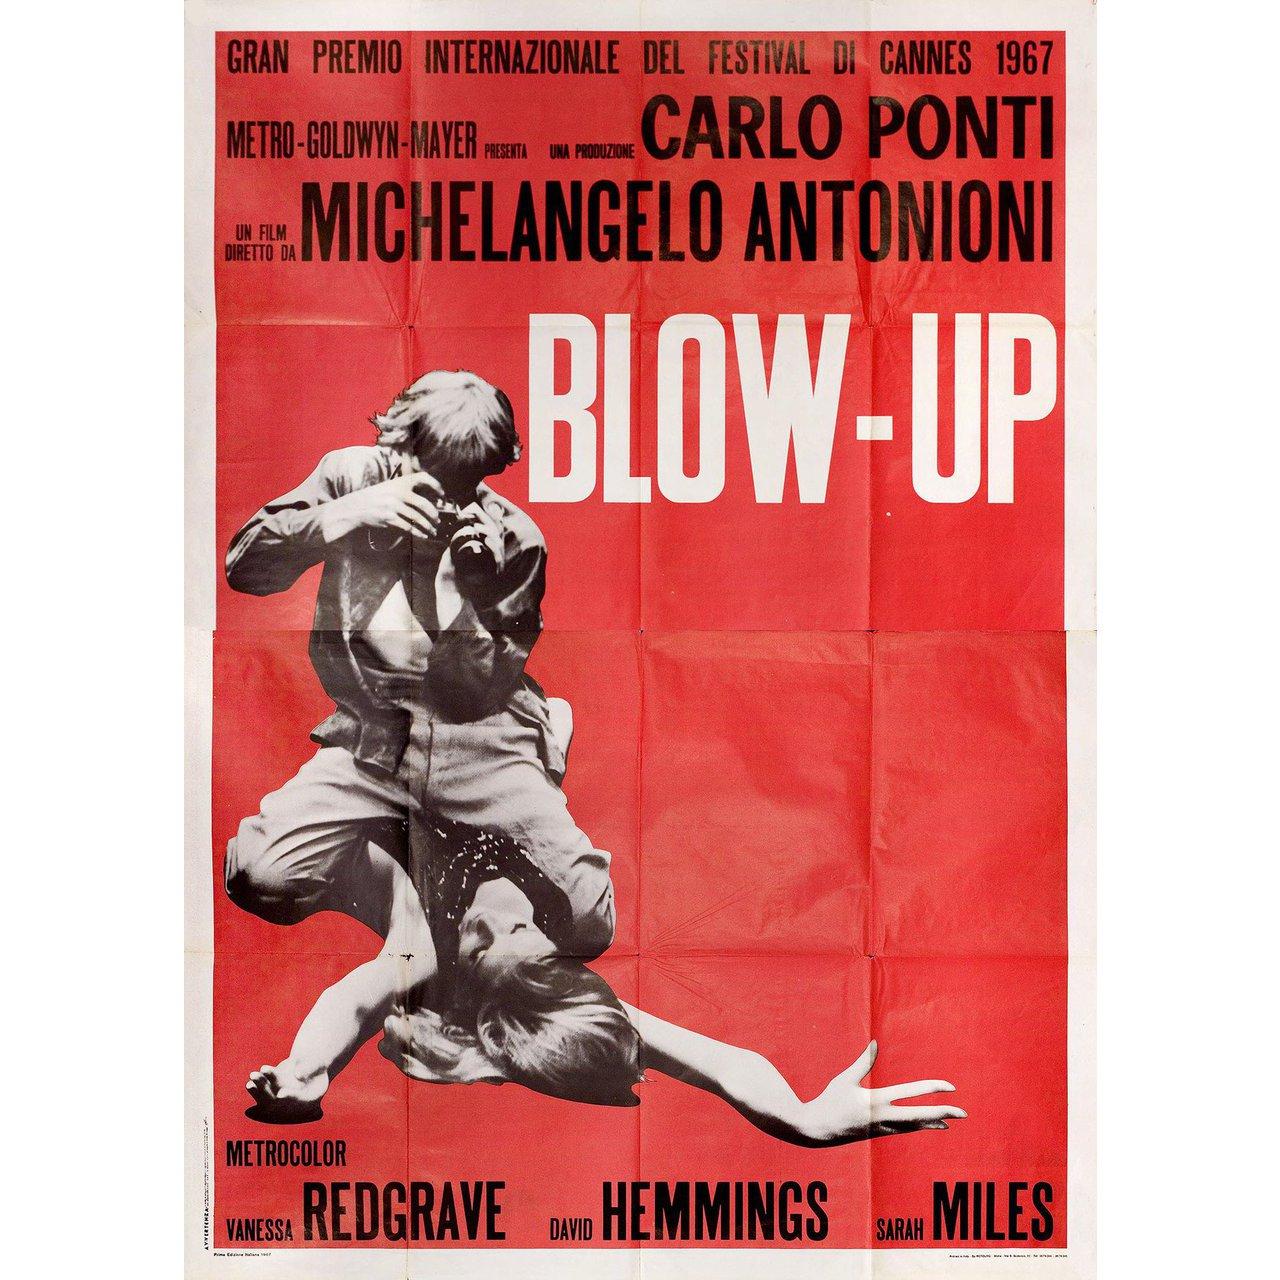 Affiche italienne originale de 1967 pour Quattro Fogli. Bon état, plié. De nombreuses affiches originales ont été publiées pliées ou ont été pliées par la suite. Cette affiche a été imprimée en plusieurs feuilles. Veuillez noter que la taille est